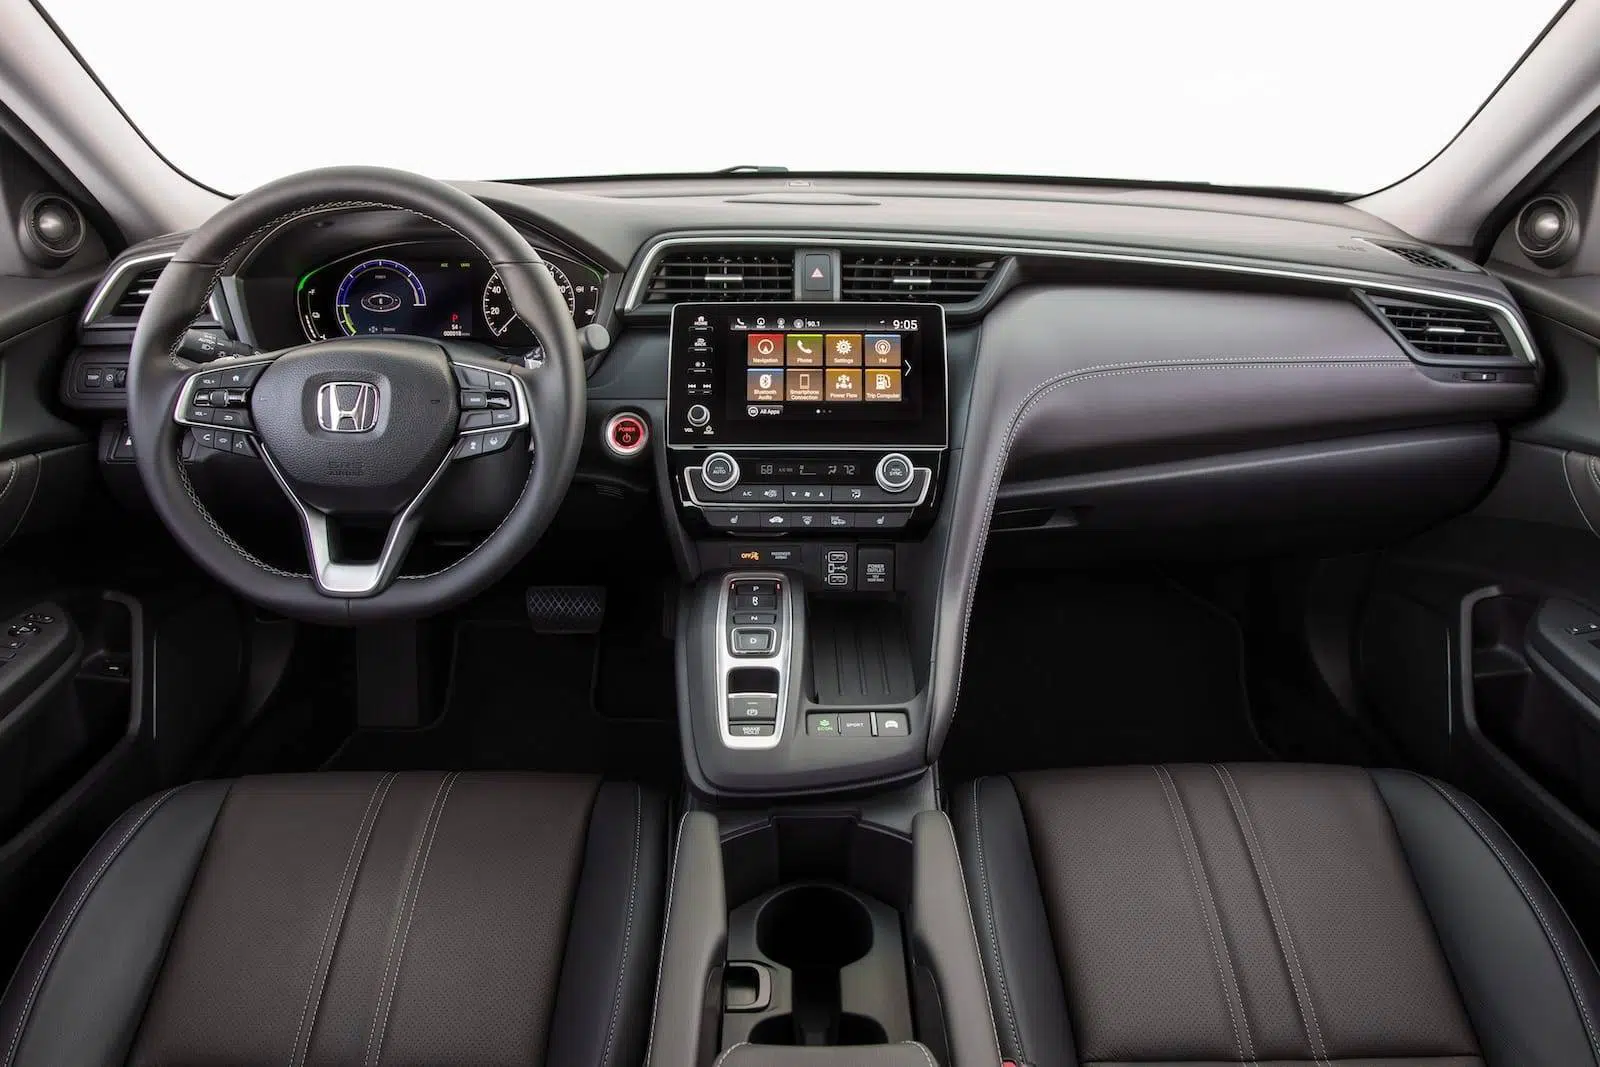 Honda Insight 2019